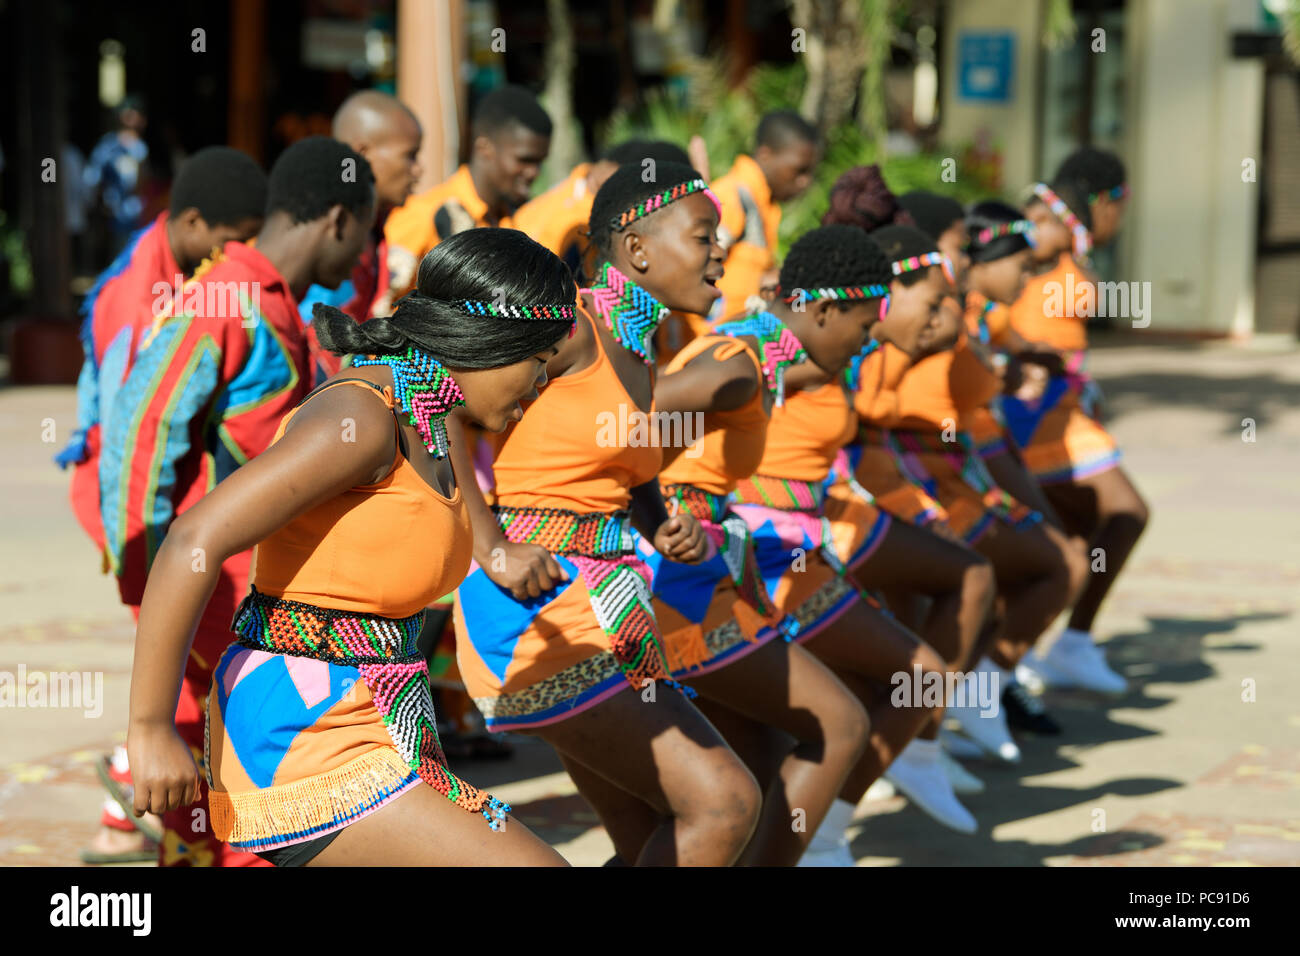 Young Zulu Männer und Frauen in bunten kulturellen Kleid tanzen und singen bei Open-air-Performance, Durban, Südafrika Stockfoto